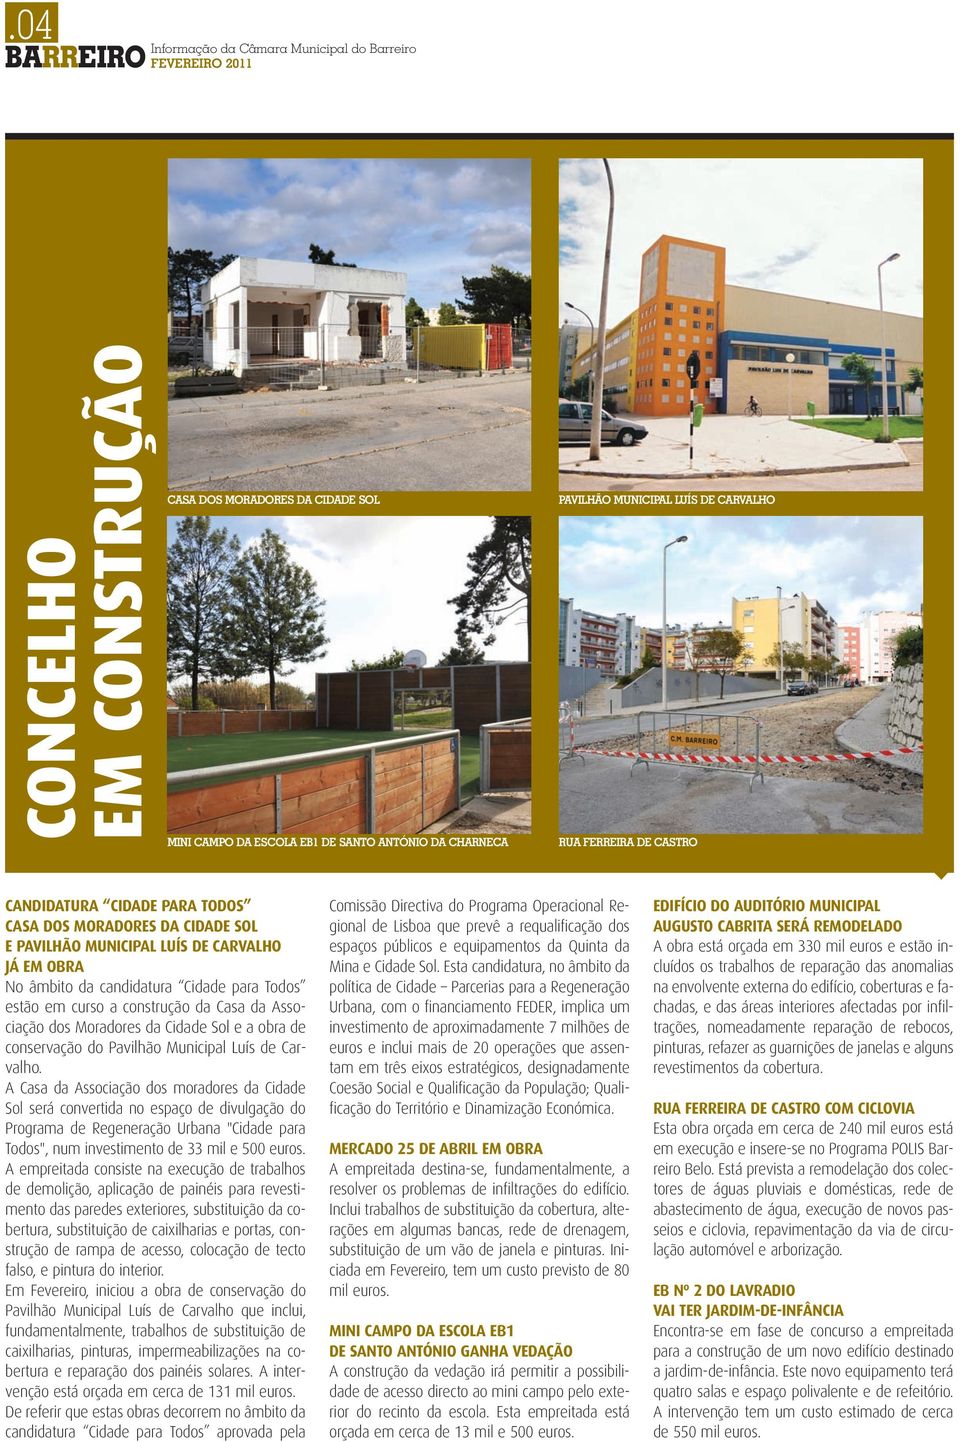 curso a construção da Casa da Associação dos Moradores da Cidade Sol e a obra de conservação do Pavilhão Municipal Luís de Carvalho.